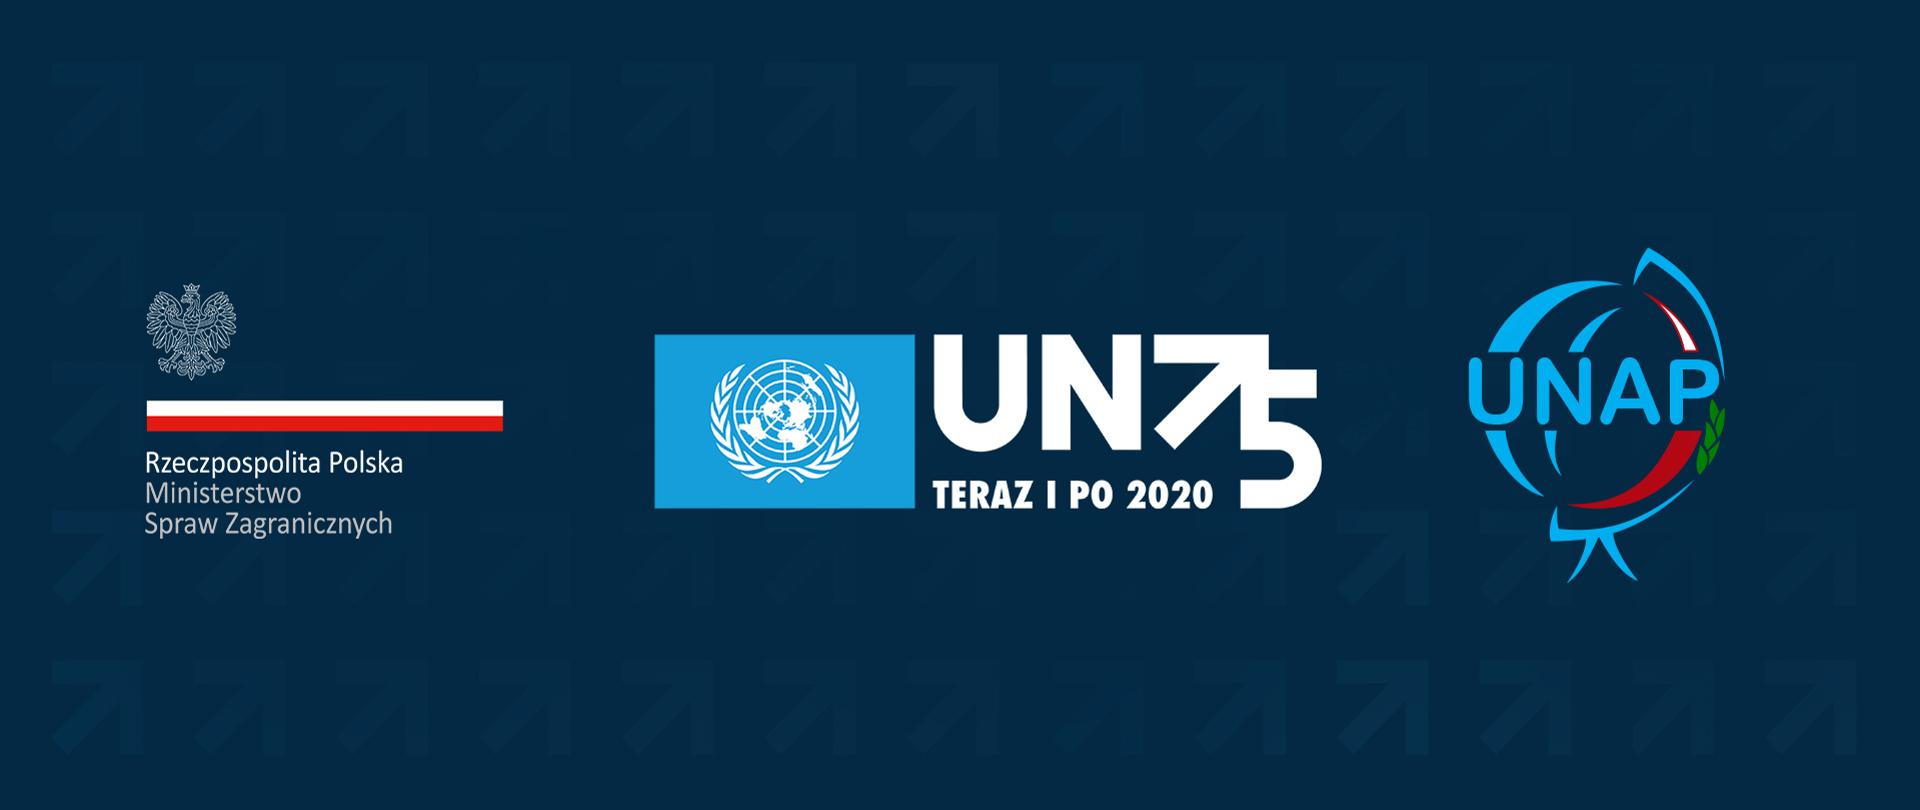 Zdjęcia logo - ONZ, MSZ, UNAP